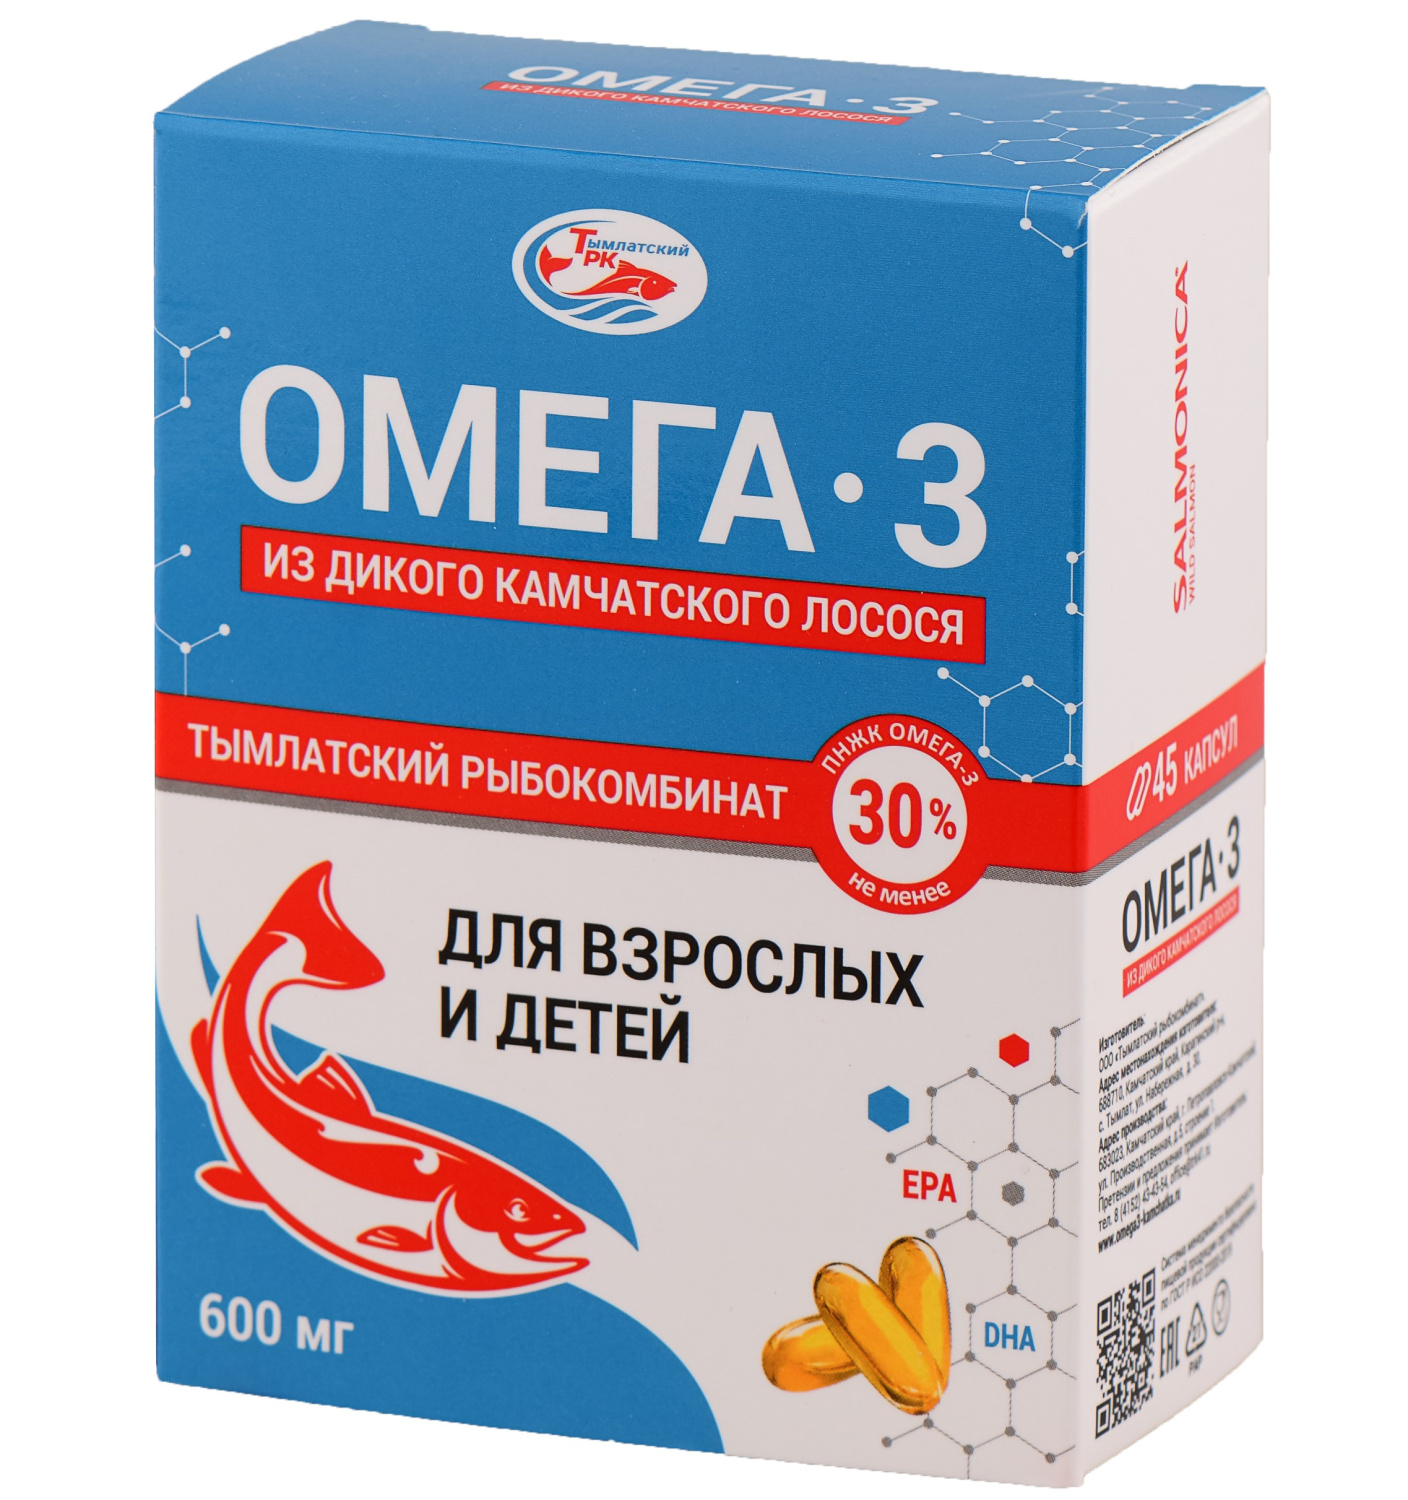 Омега-3 из дикого камчатского лосося Тымлатский рыбокомбинат (Salmoniсa), 45 капс. по 600 мг.